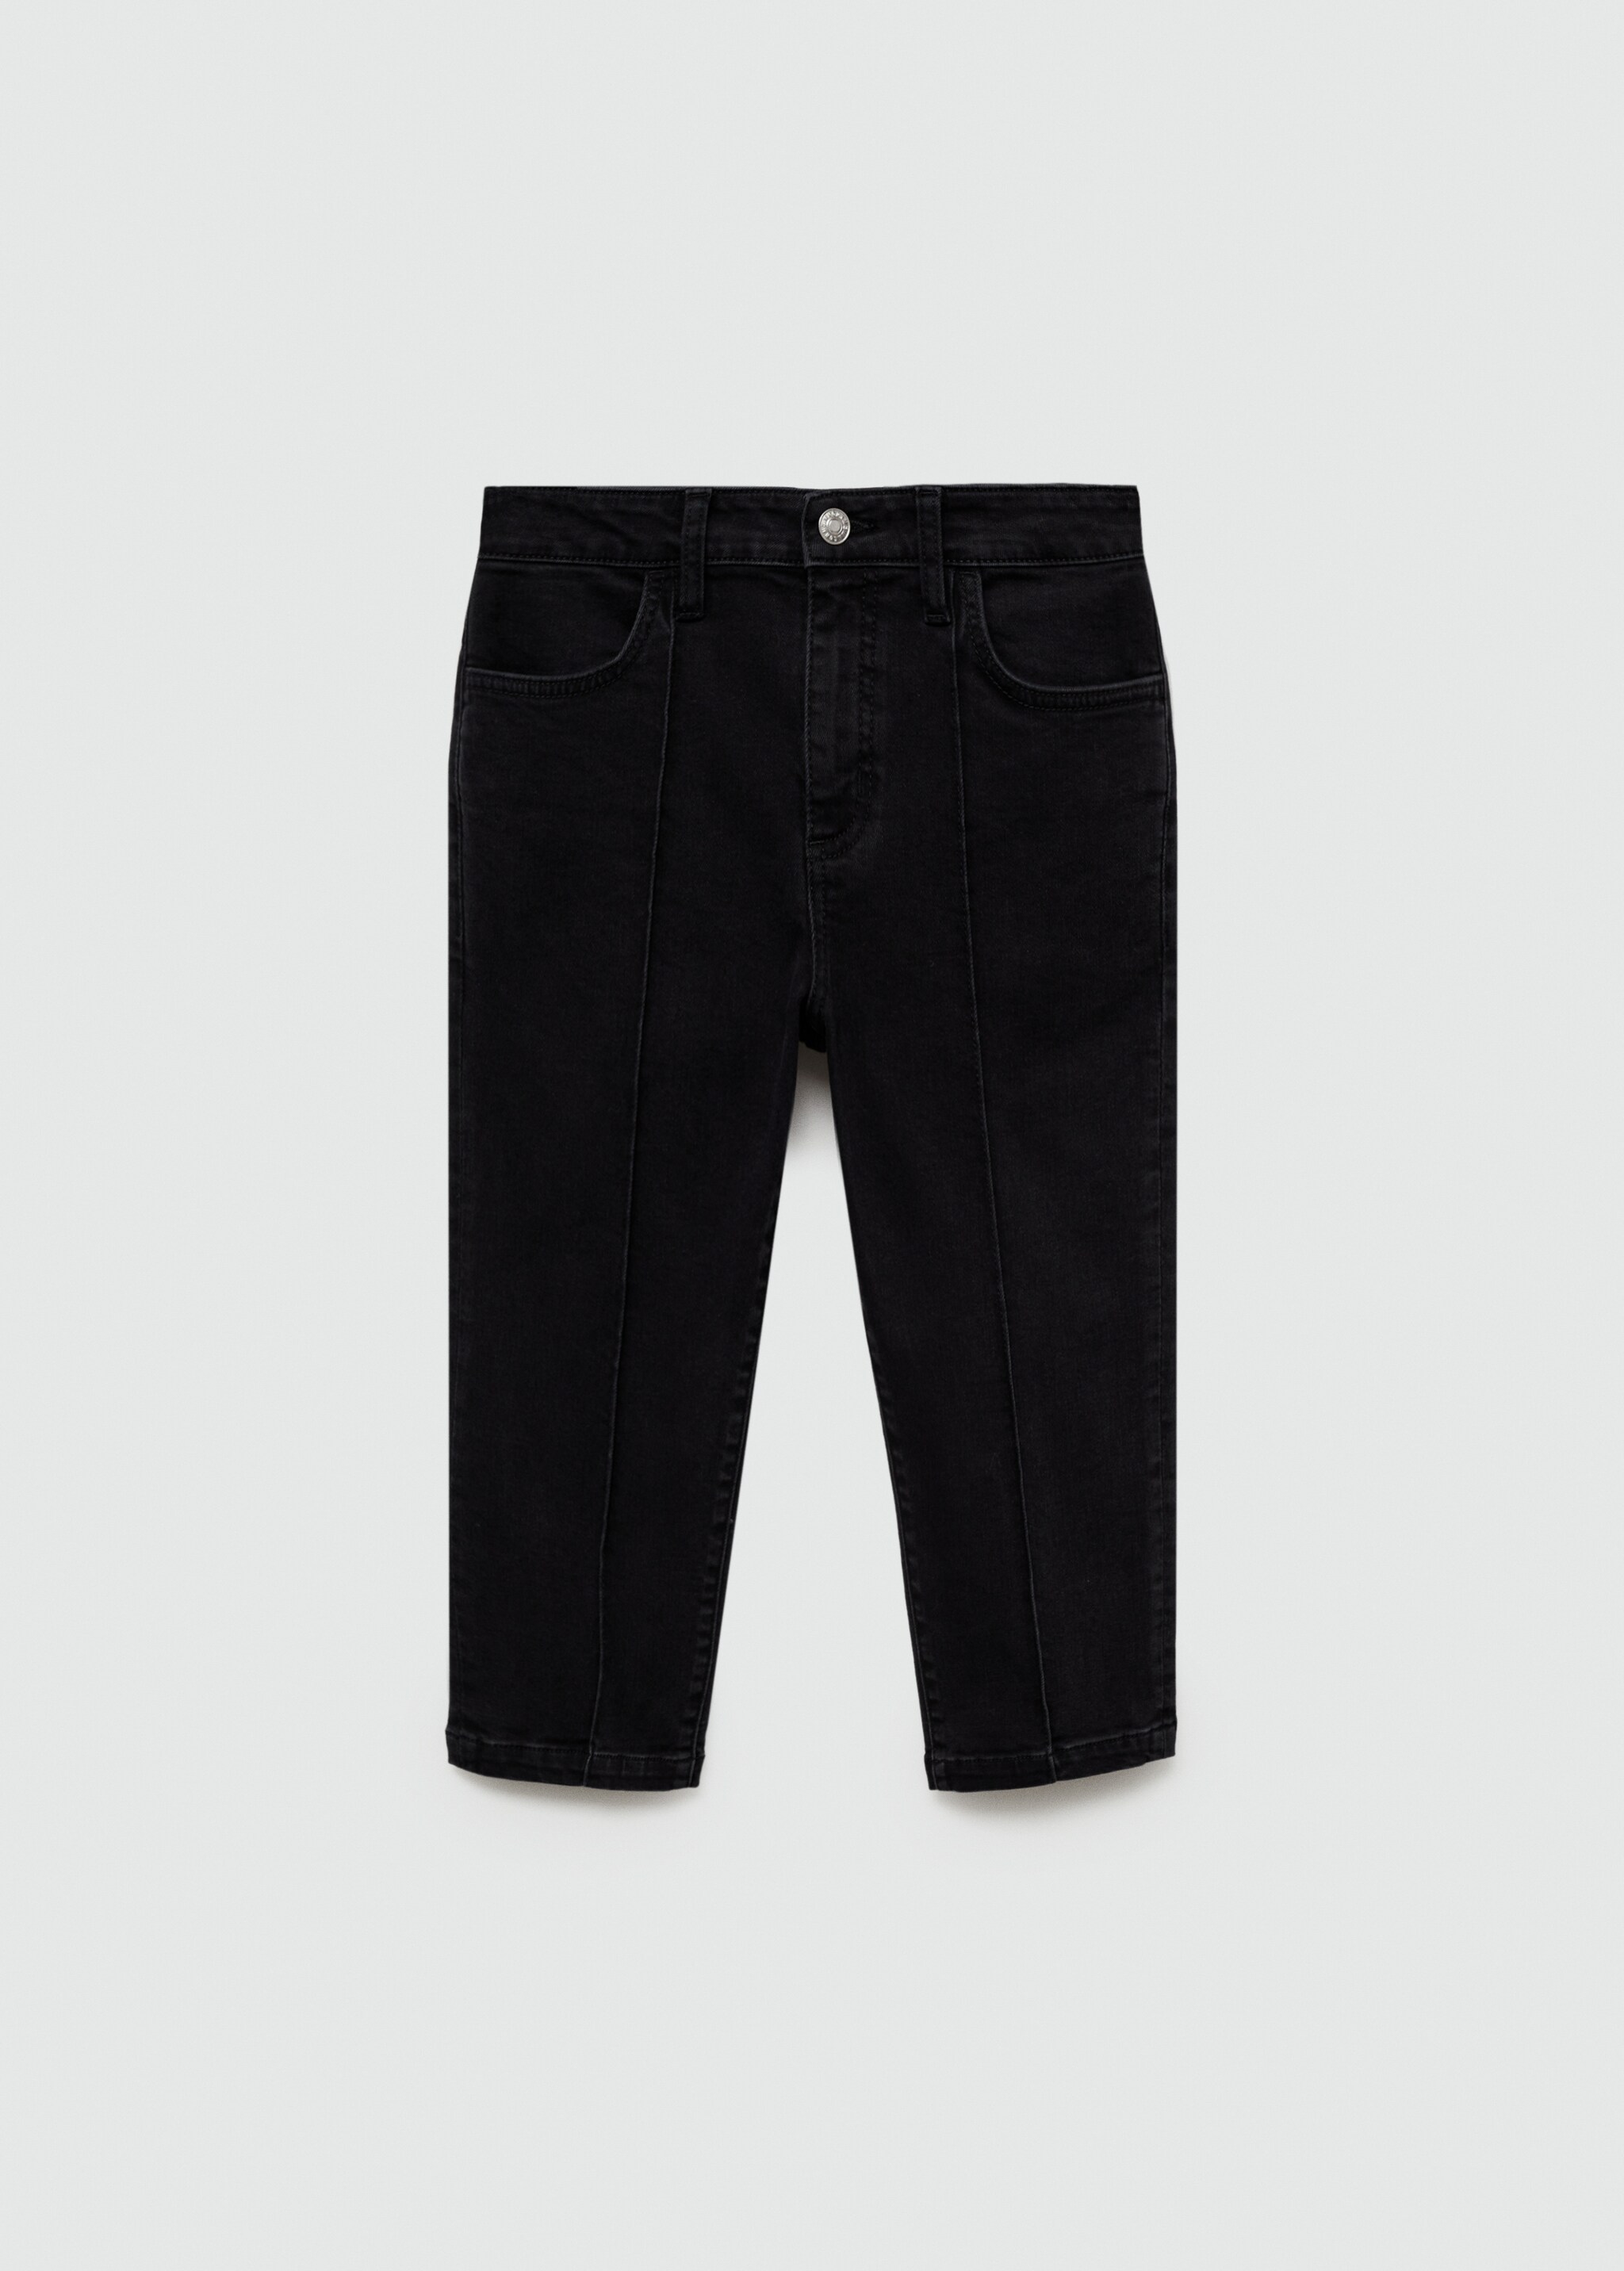 Dekoratif dikişli slim capri jean pantolon - Modelsiz ürün